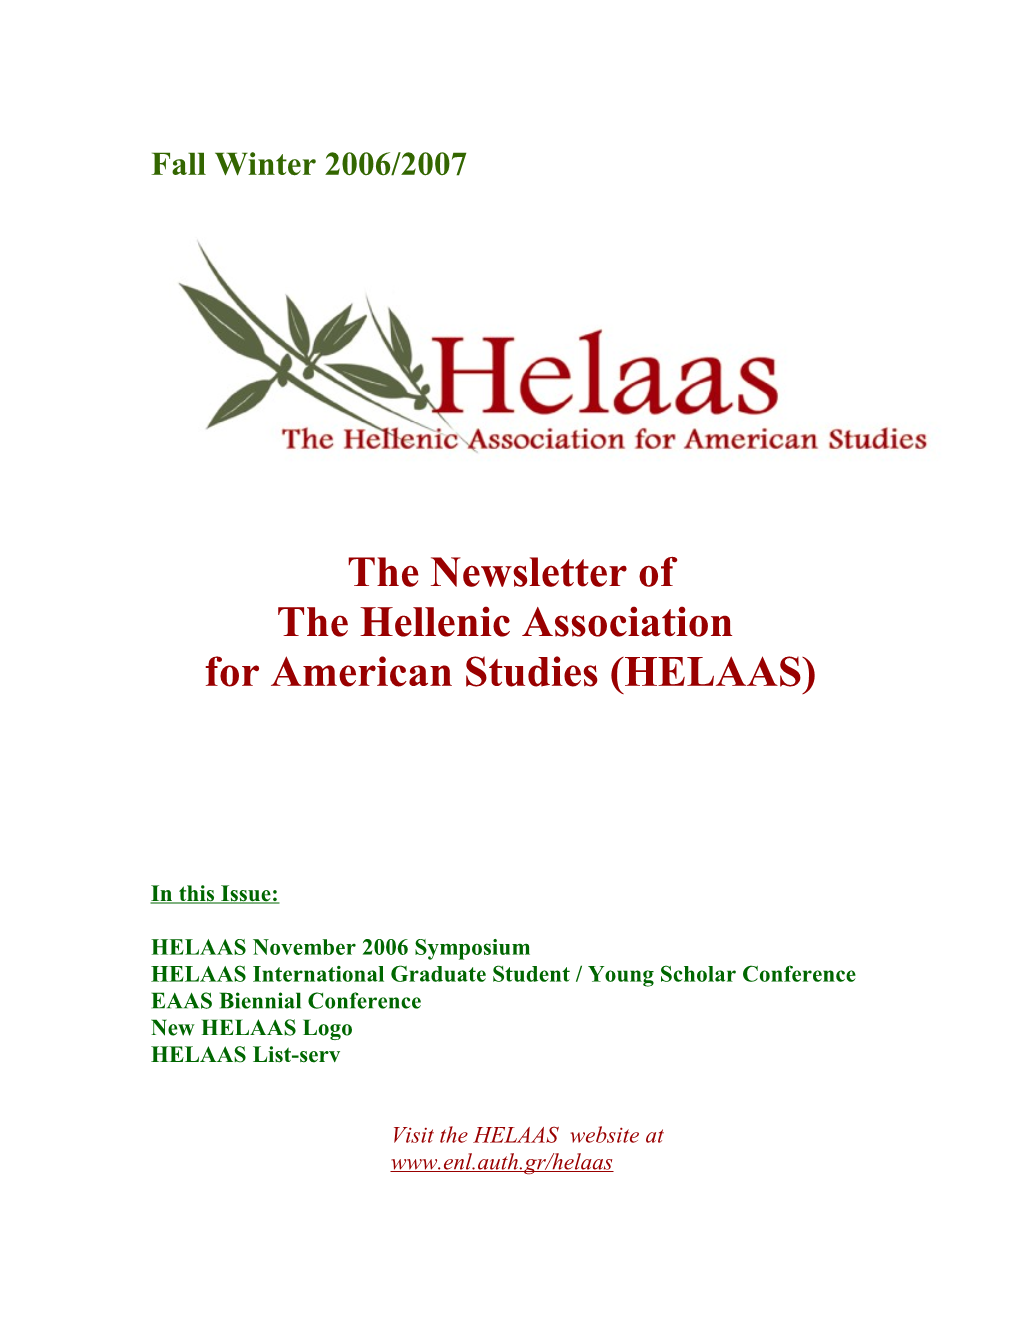 For American Studies (HELAAS)